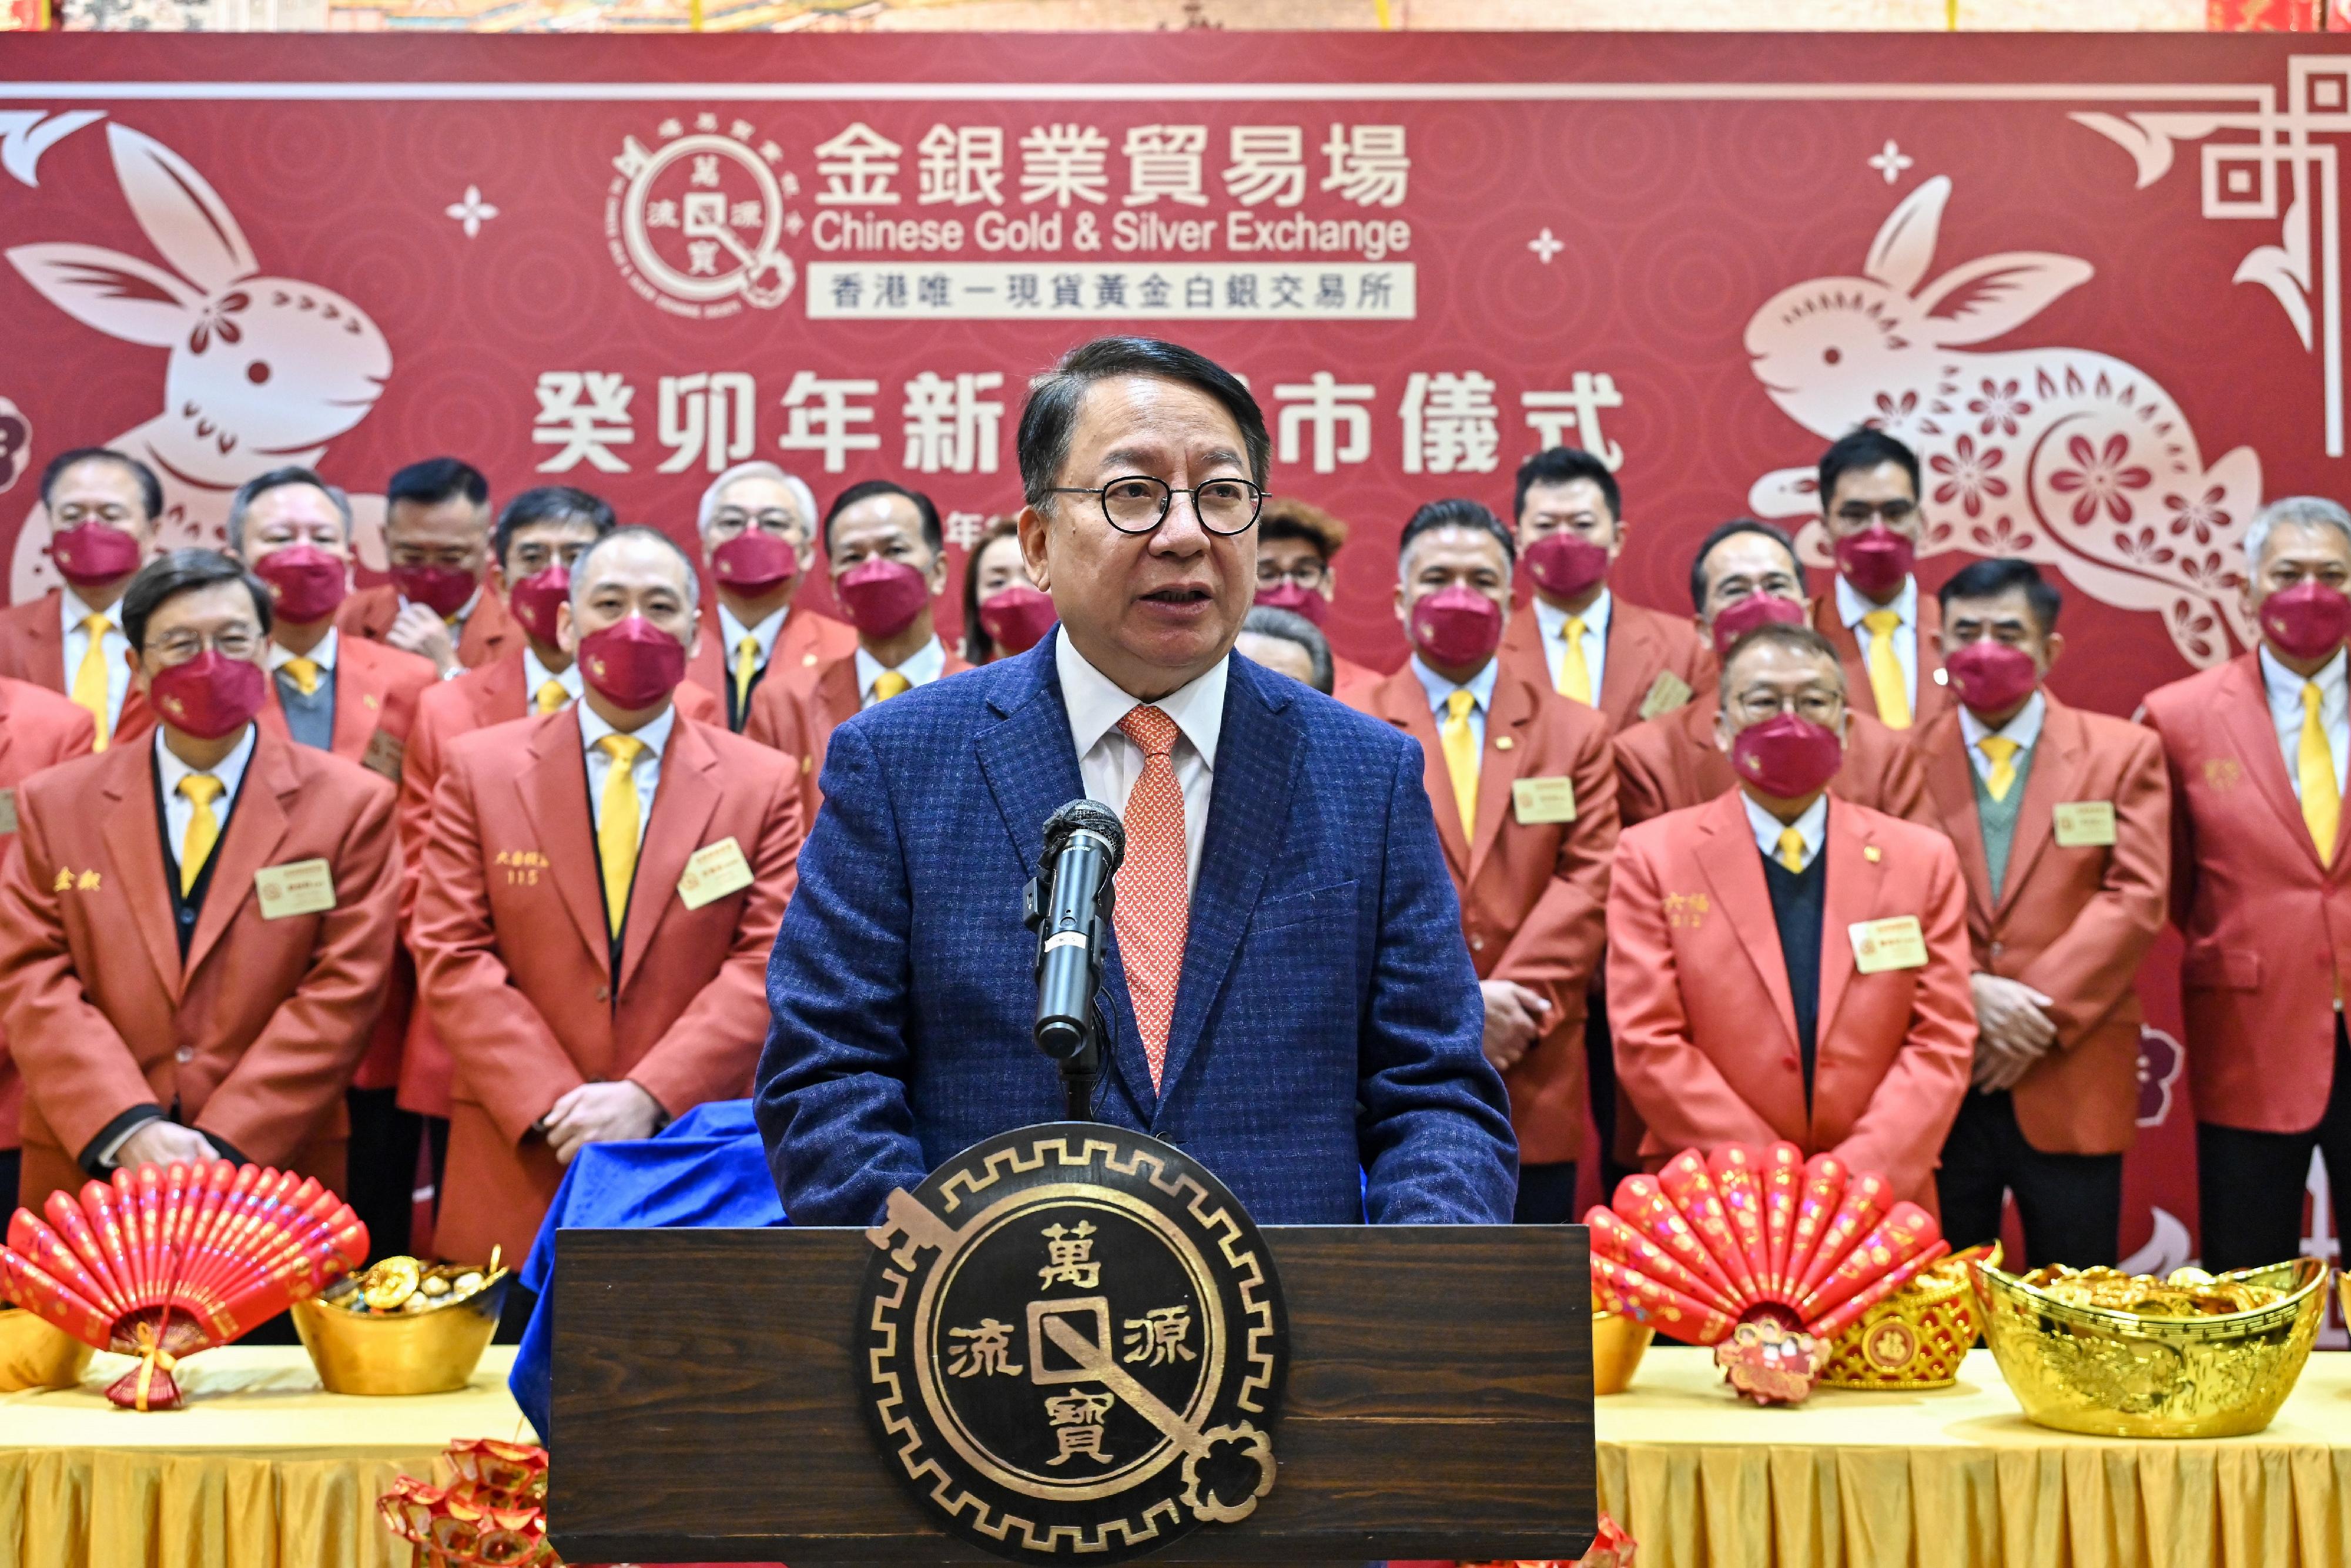 政務司司長陳國基今日（一月二十六日）在金銀業貿易場癸卯年新春開市儀式致辭。